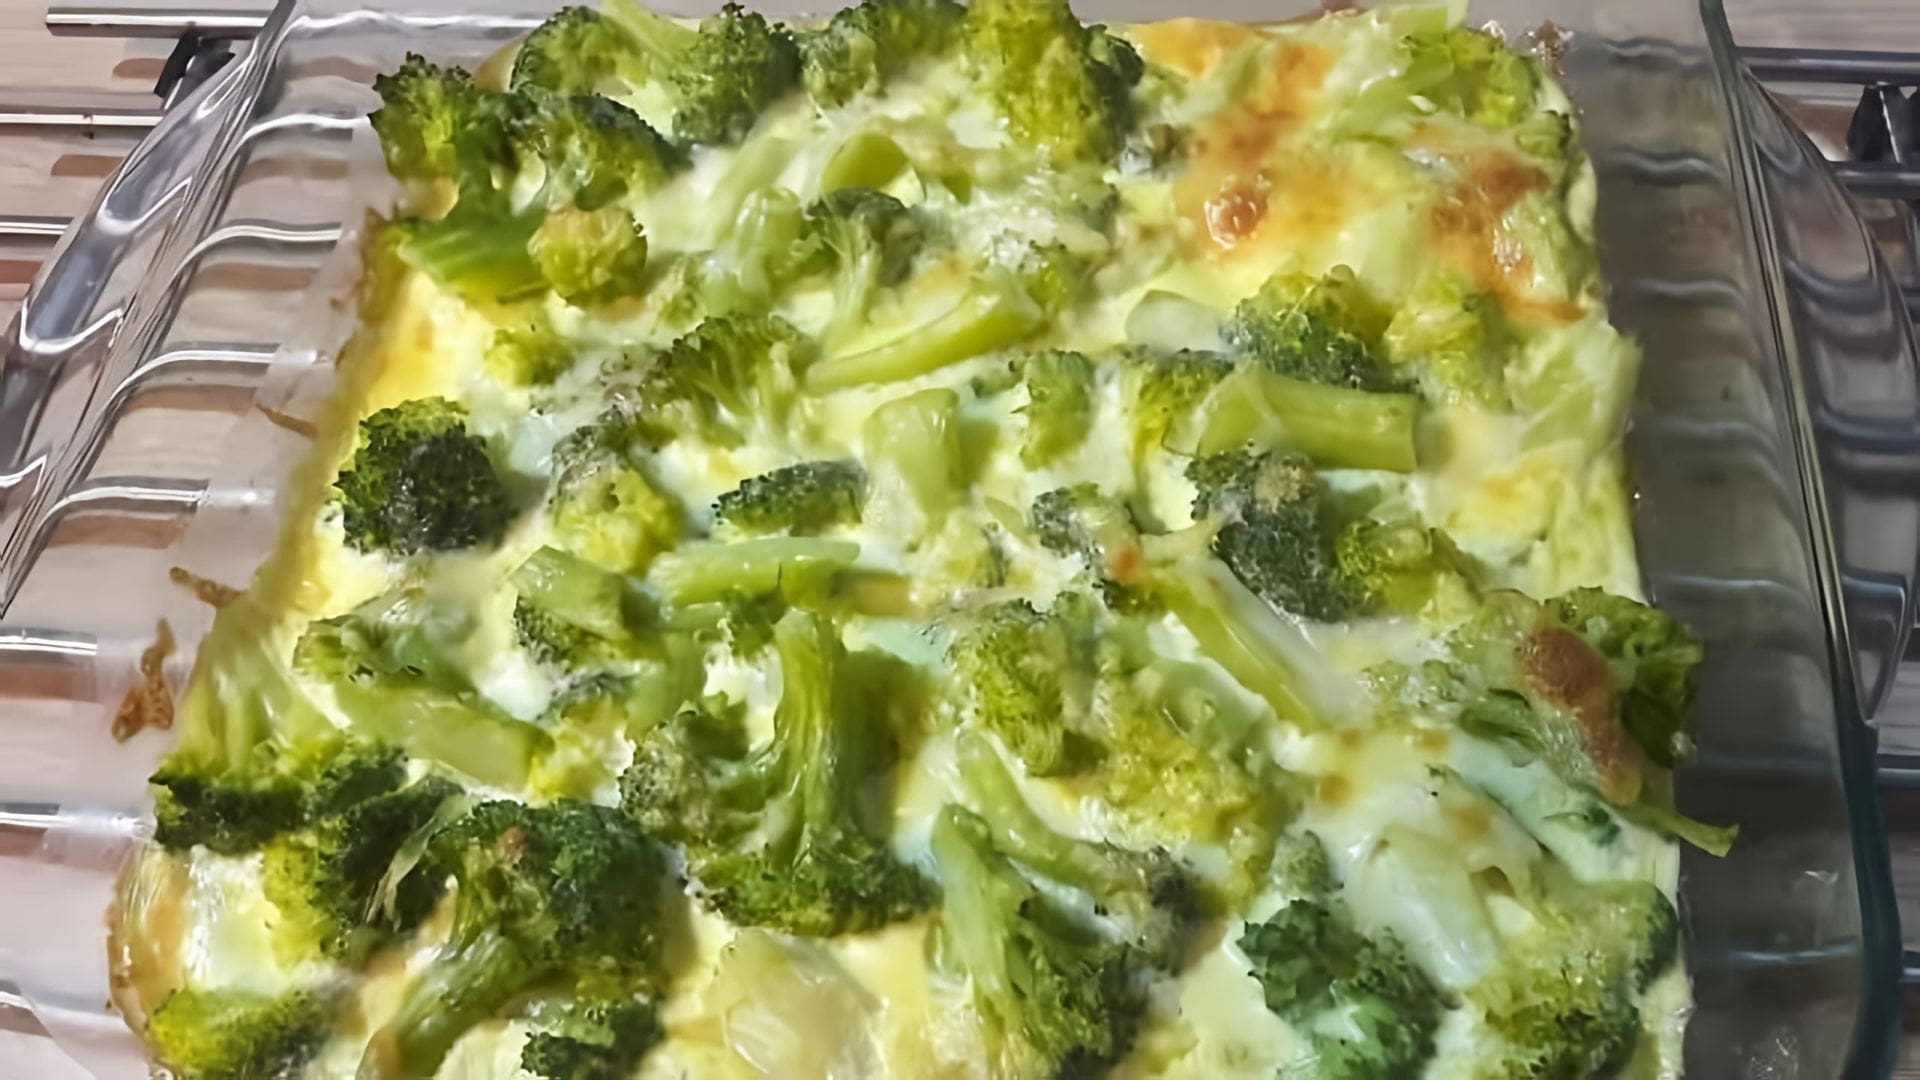 В этом видео демонстрируется рецепт приготовления запеканки из брокколи